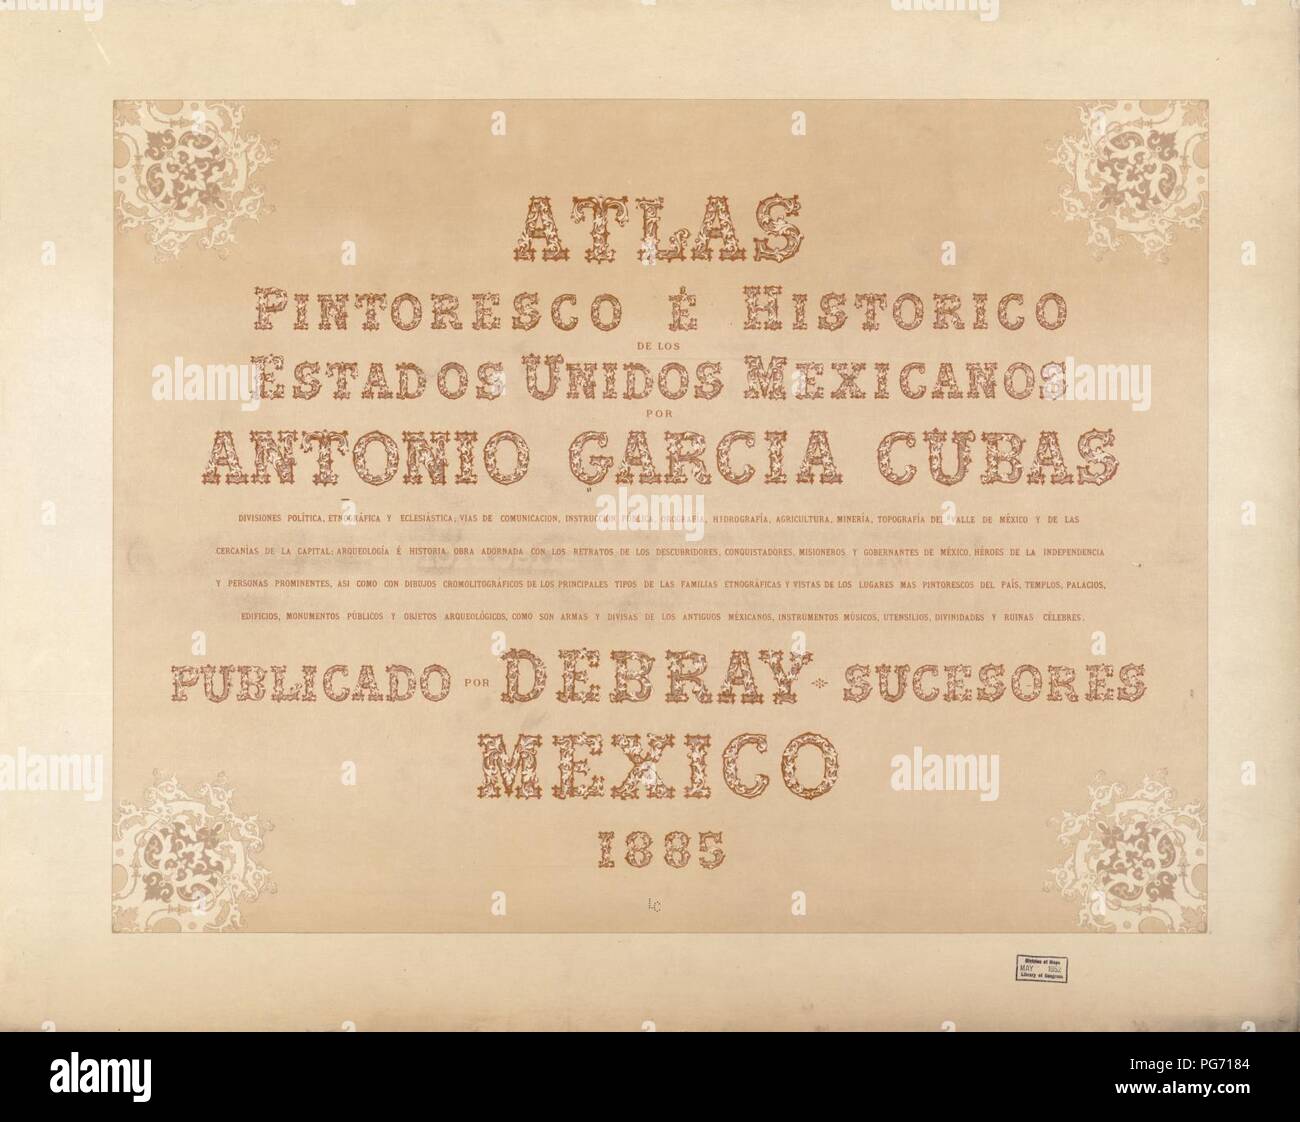 Atlas pintoresco é histórico de los Estados Unidos Mexicanos. Stock Photo